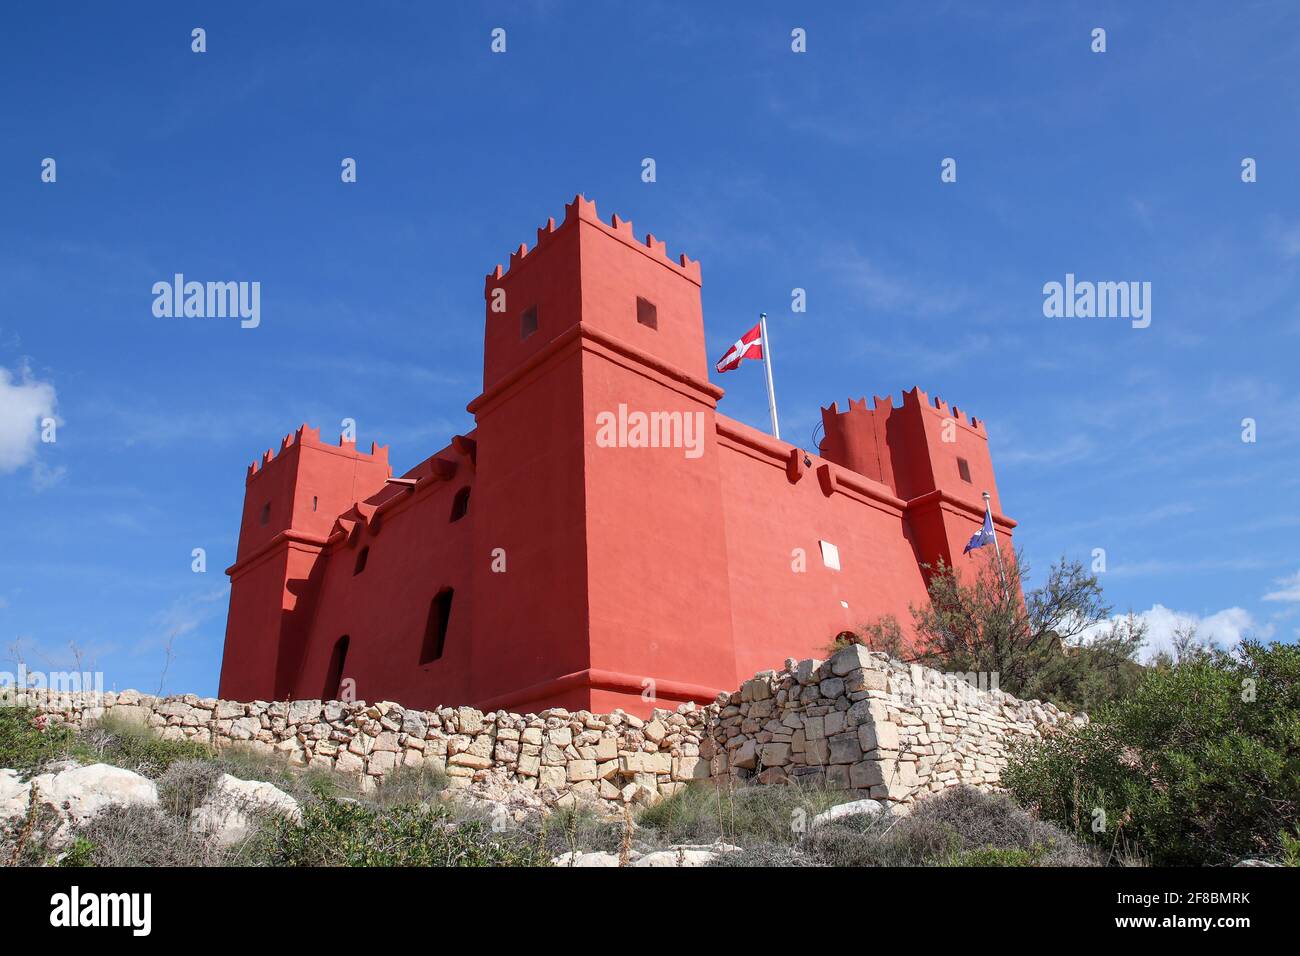 La torre roja de Malta, también conocida como la Torre de San Agatha, fue construida en 1649 por los caballeros de san Juan. Foto de stock